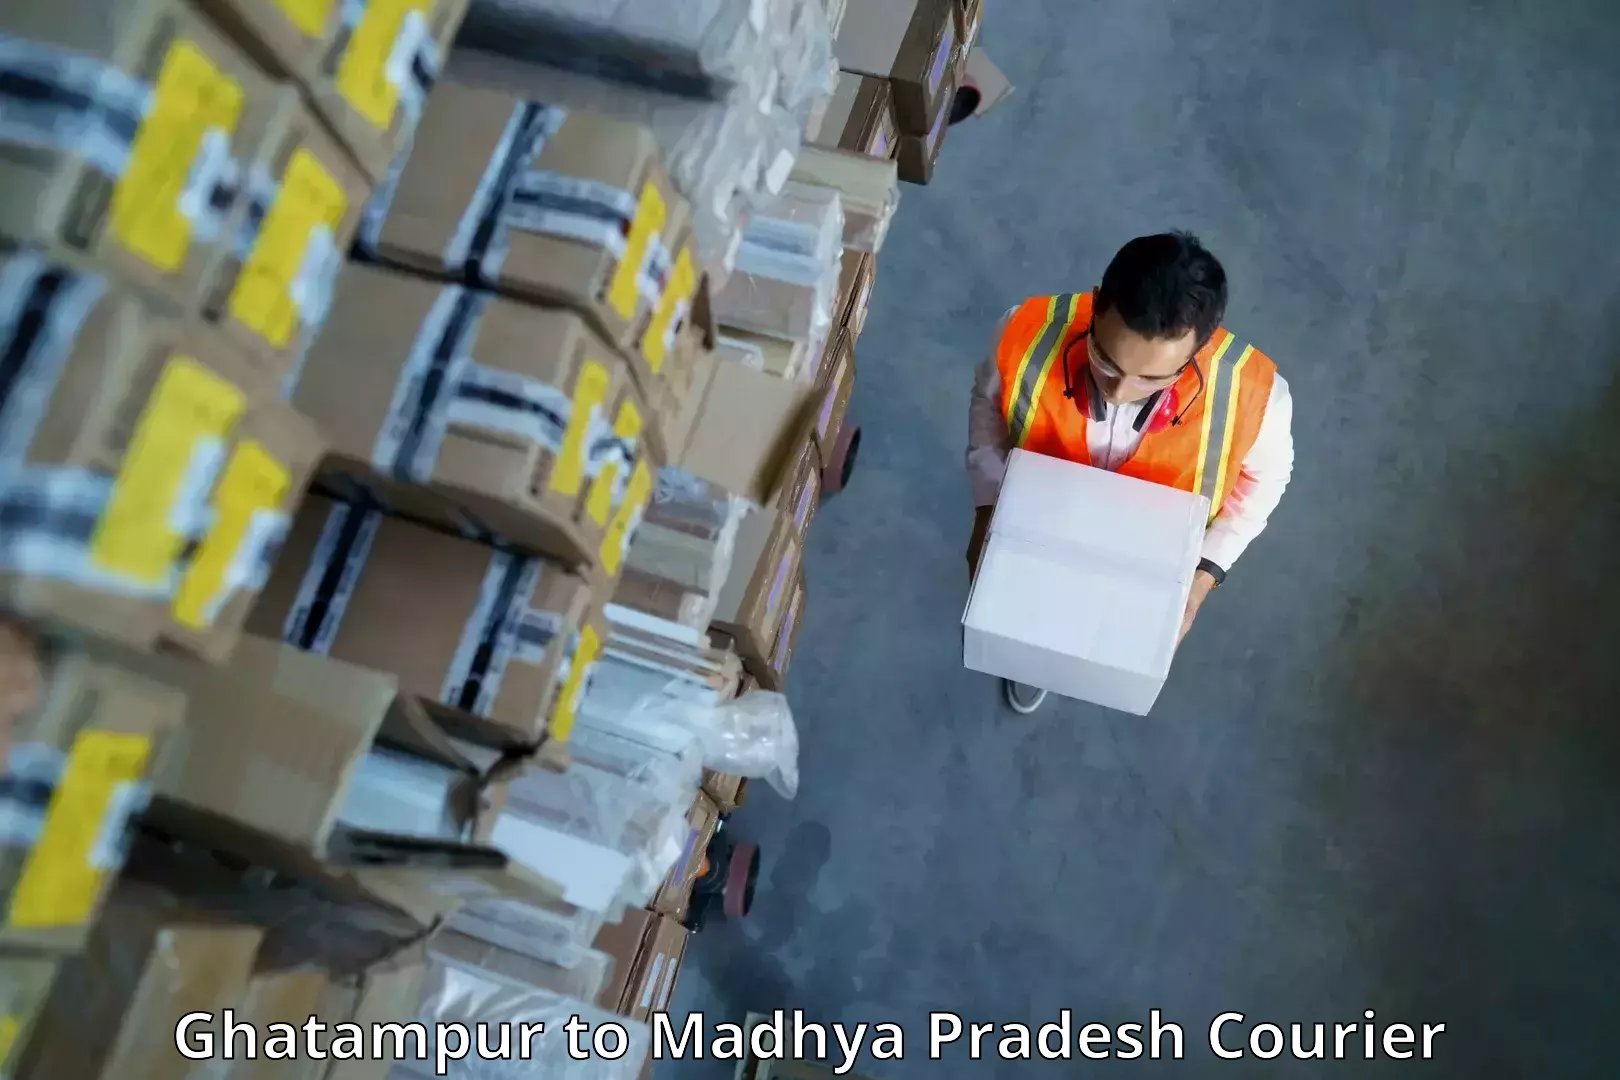 Next-generation courier services Ghatampur to Garh Rewa